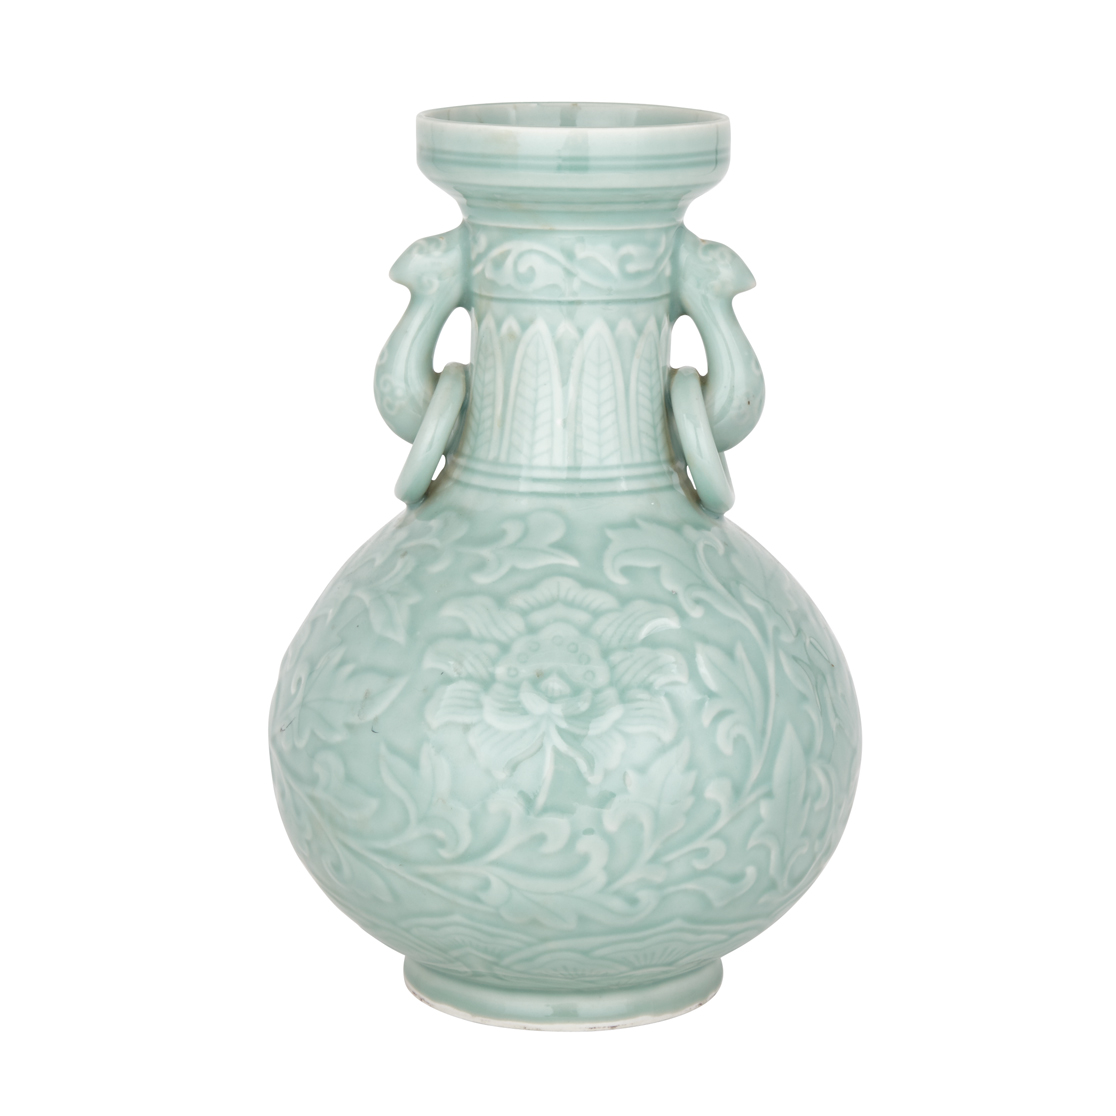 A Celadon Vase with Archaic Phoenix Handles